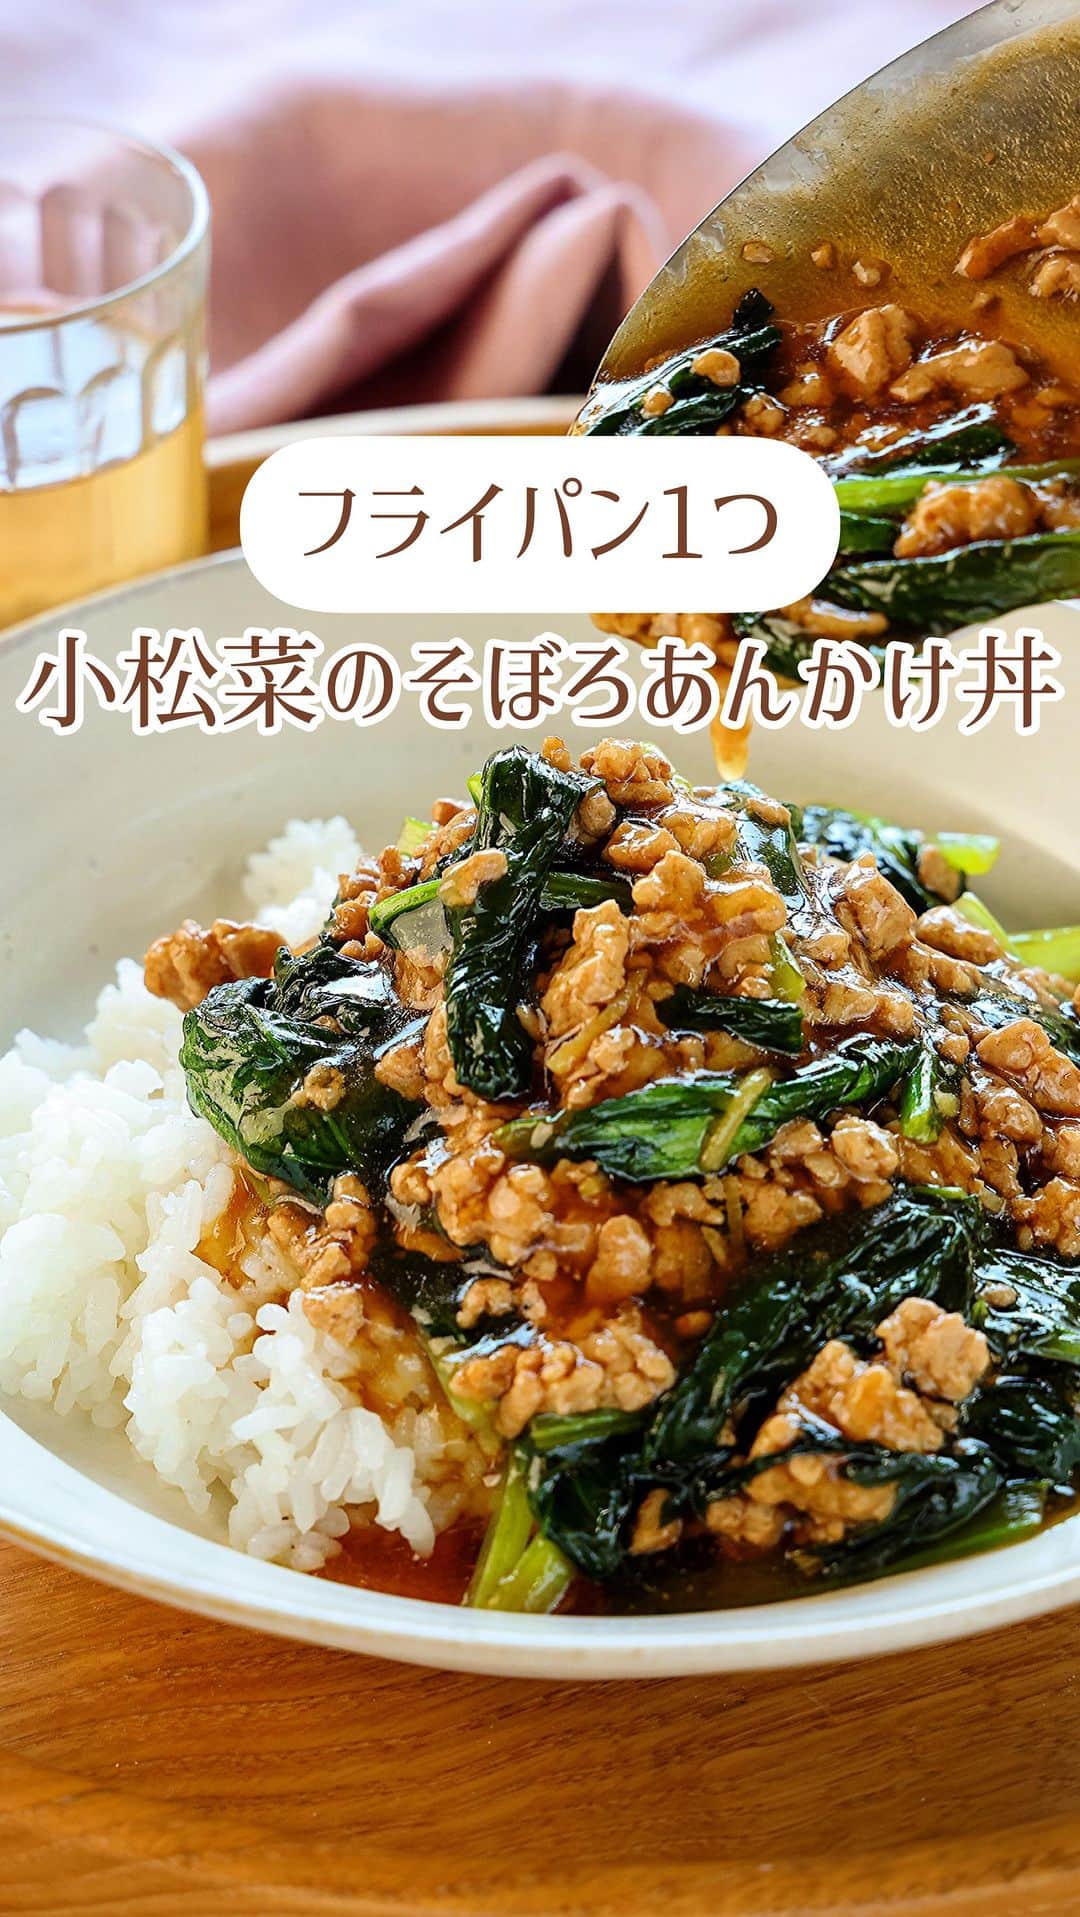 Mizuki【料理ブロガー・簡単レシピ】のインスタグラム：「・すぐできとろみごはん💕 ⁡ ［#レシピ ］ ーーーーーーーーーーーーーーーーーー すぐでき！小松菜のそぼろあんかけ丼 ーーーーーーーーーーーーーーーーーー ⁡ ⁡ ⁡ おはようございます☺️ ⁡ 今日ご紹介させていただくのは すぐできとろみごはん🍚 \ 小松菜のそぼろあんかけ丼 / ⁡ 味付けもとろみ付けも 合わせ調味料で失敗なし💕 フライパン1つですぐできる 超簡単レシピです😋 ⁡ 小松菜を白菜に変えたり きのこを加えたり 生姜はチューブで代用もできるので よかったらお試しくださいね🥰 ⁡ ⁡ ⁡ ⋱⋰ ⋱⋰ ⋱⋰ ⋱⋰ ⋱⋰ ⋱⋰ ⋱⋰ 📍簡単・時短・節約レシピ更新中  Threadsもこちらから▼ @mizuki_31cafe ⁡ 📍謎の暮らし＆変なライブ垢 @mizuki_kurashi ⋱⋰ ⋱⋰ ⋱⋰ ⋱⋰ ⋱⋰ ⋱⋰ ⋱⋰ ⁡ ⁡ ⁡ ＿＿＿＿＿＿＿＿＿＿＿＿＿＿＿＿＿＿＿ 【2人分】 豚ひき肉...150g 小松菜...1袋(200g) 生姜...1/2かけ ごま油...小2 ⚫︎水...200ml ⚫︎醤油・みりん...各大1.5 ⚫︎片栗粉...大1 ⚫︎砂糖・和風顆粒だし...各小1/2 ごはん...2人分 ⁡ 1.小松菜は4cm長さに切る。生姜は千切りにする。⚫︎は合わせておく。 2.フライパンにごま油を中火で熱してひき肉を炒める。火が通ったら小松菜を加えてしんなりするまで炒める。 3.⚫︎を加え、混ぜながらとろみを付け、ごはんにかける。 ￣￣￣￣￣￣￣￣￣￣￣￣￣￣￣￣￣￣￣ ⁡ ⁡ 《ポイント》 ♦︎生姜がない場合はチューブ(2〜3cm)で代用OK！合わせ調味料に加えてください♩ ♦︎合わせ調味料はよく混ぜてから加え、混ぜながらとろみが付くまで加熱してください♩ ⁡ ⁡ ⁡ ⁡ ⁡ ⋱⋰ ⋱⋰ ⋱⋰ ⋱⋰ ⋱⋰ ⋱⋰ ⋱⋰  愛用している調理器具・器など   #楽天ROOMに載せてます ‎𐩢𐩺  (ハイライトから飛べます🕊️) ⋱⋰ ⋱⋰ ⋱⋰ ⋱⋰ ⋱⋰ ⋱⋰ ⋱⋰ ⁡ ⁡ ⁡ ⁡ ⁡ ✼••┈┈┈┈┈••✼••┈┈┈┈┈••✼ 今日のごはんこれに決まり！ ‎𓊆#Mizukiのレシピノート 500品𓊇 ✼••┈┈┈┈┈••✼••┈┈┈┈┈••✼ ⁡ ˗ˏˋ おかげさまで25万部突破 ˎˊ˗ 料理レシピ本大賞準大賞を受賞しました✨ ⁡ 6000点の中からレシピを厳選し まさかの【500レシピ掲載】 肉や魚のメインおかずはもちろん 副菜、丼、麺、スープ、お菓子 ハレの日のレシピ、鍋のレシピまで 全てこの一冊で完結 𓌉◯𓇋 (全国の書店・ネット書店で発売中) ⁡ ⁡ ⁡ ⁡ ⁡ ⁡ #小松菜レシピ #ひき肉レシピ #小松菜 #あんかけ #あんかけ丼 #丼 #ランチ #節約料理  #簡単料理  #時短料理 #mizukiレシピ  #時短レシピ #節約レシピ #簡単レシピ」